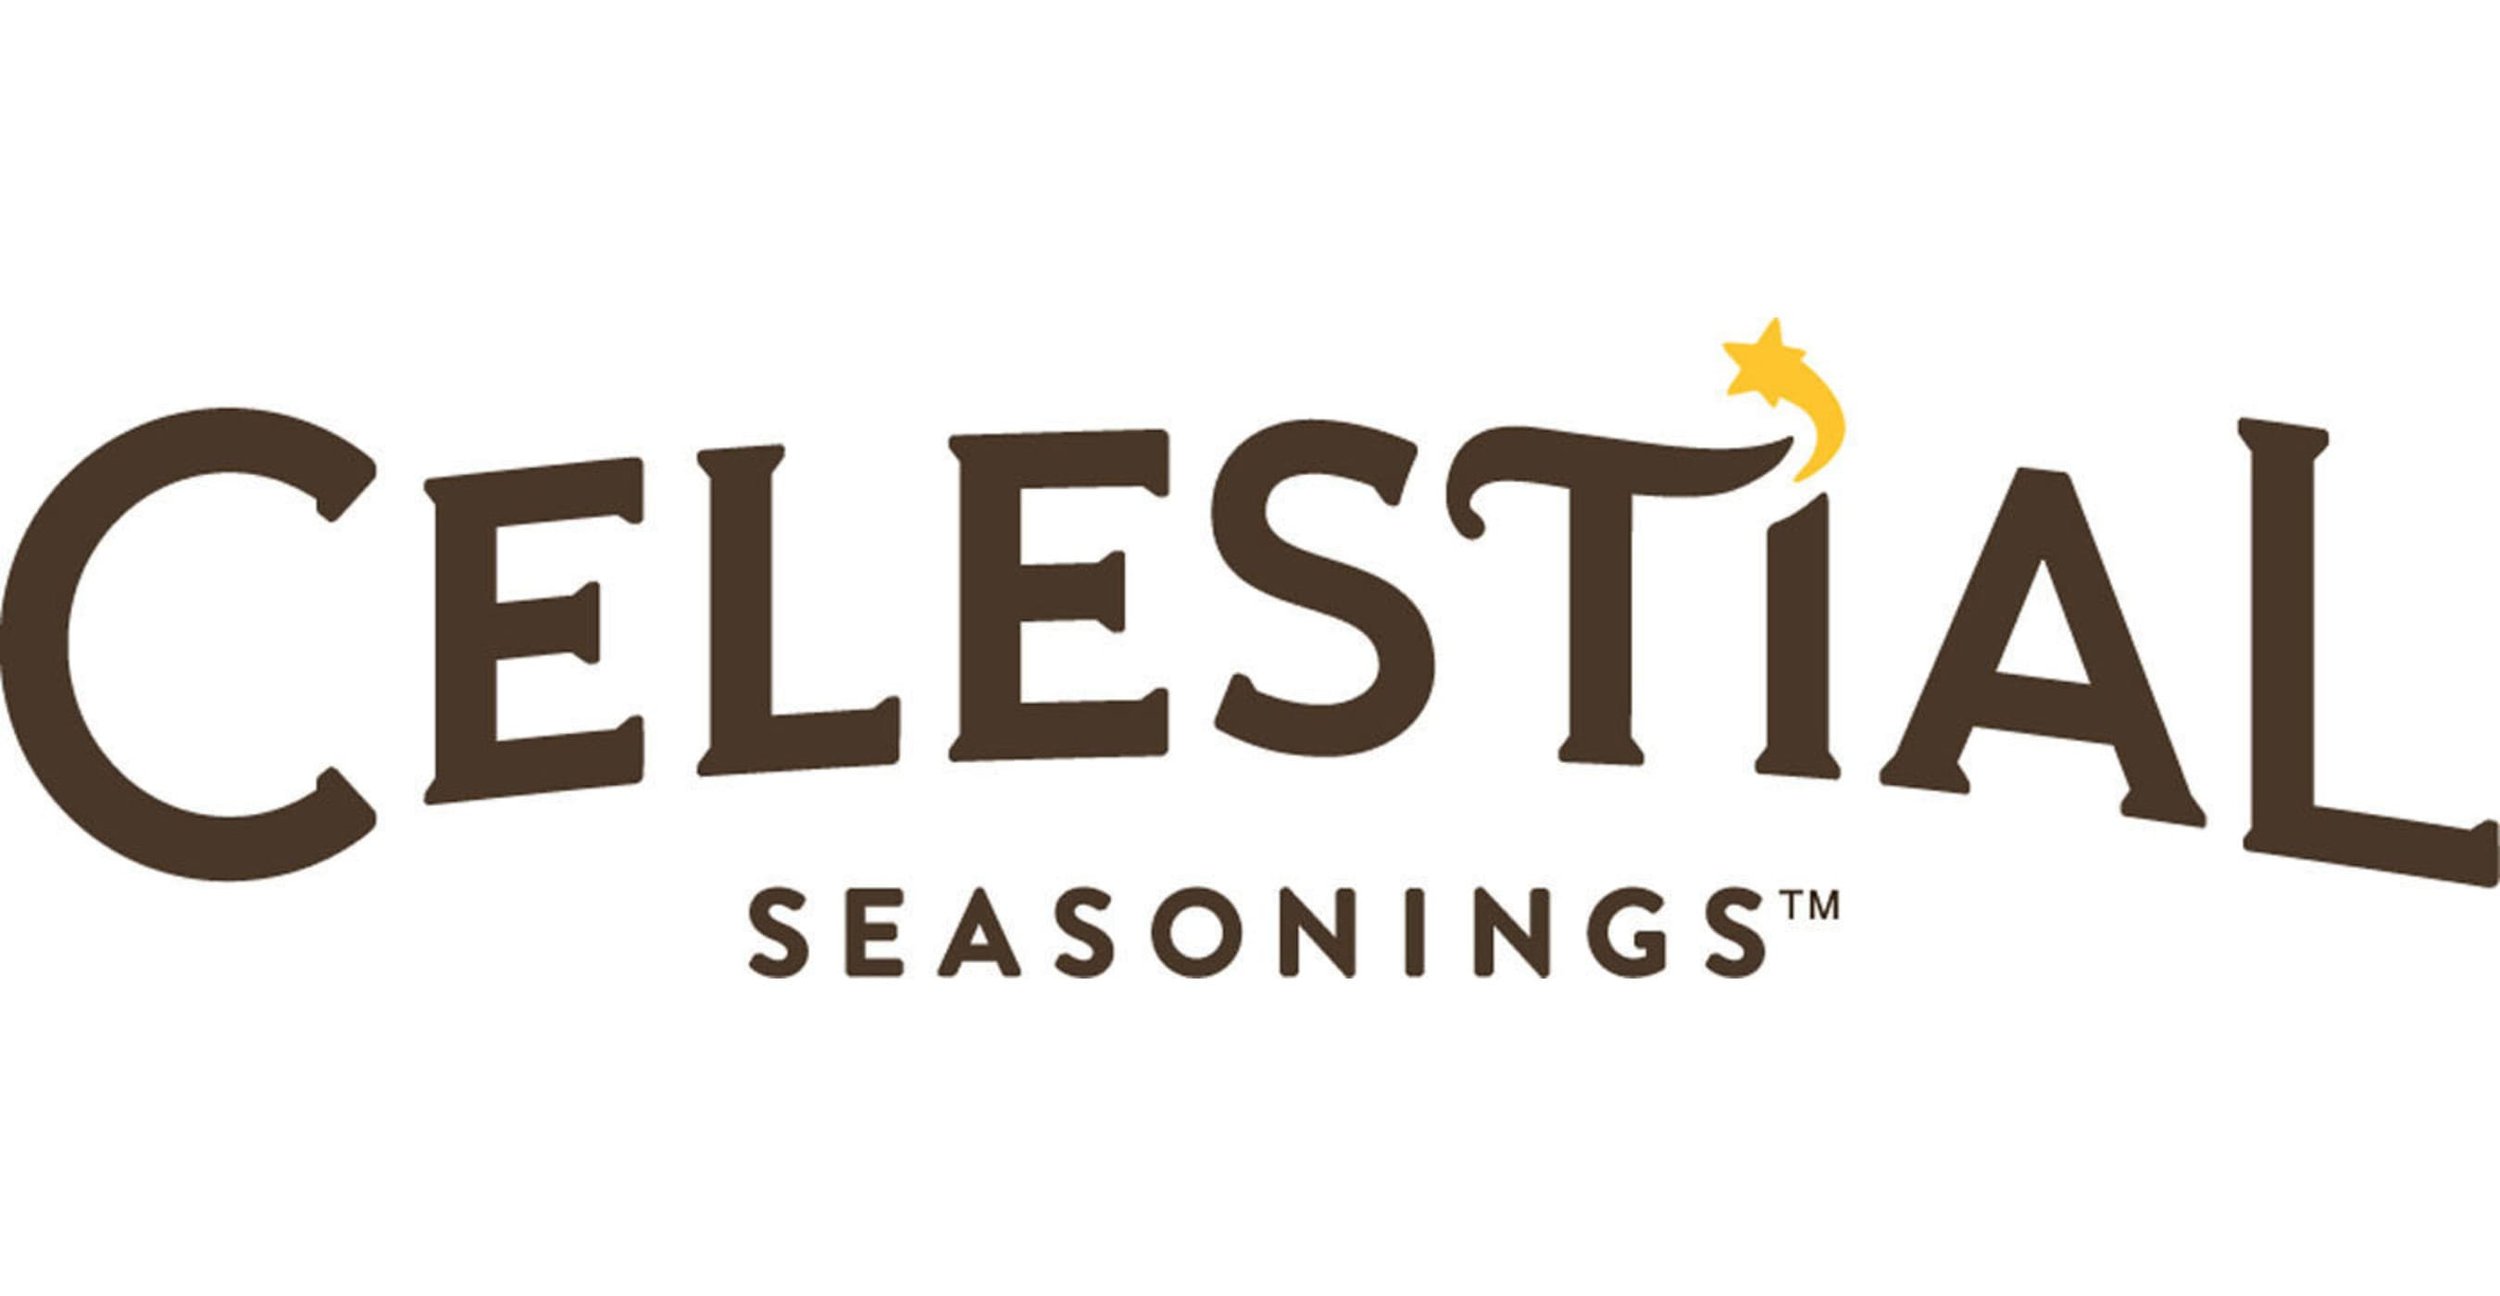 Celestial-Seasonings-Logo-2015.jpg